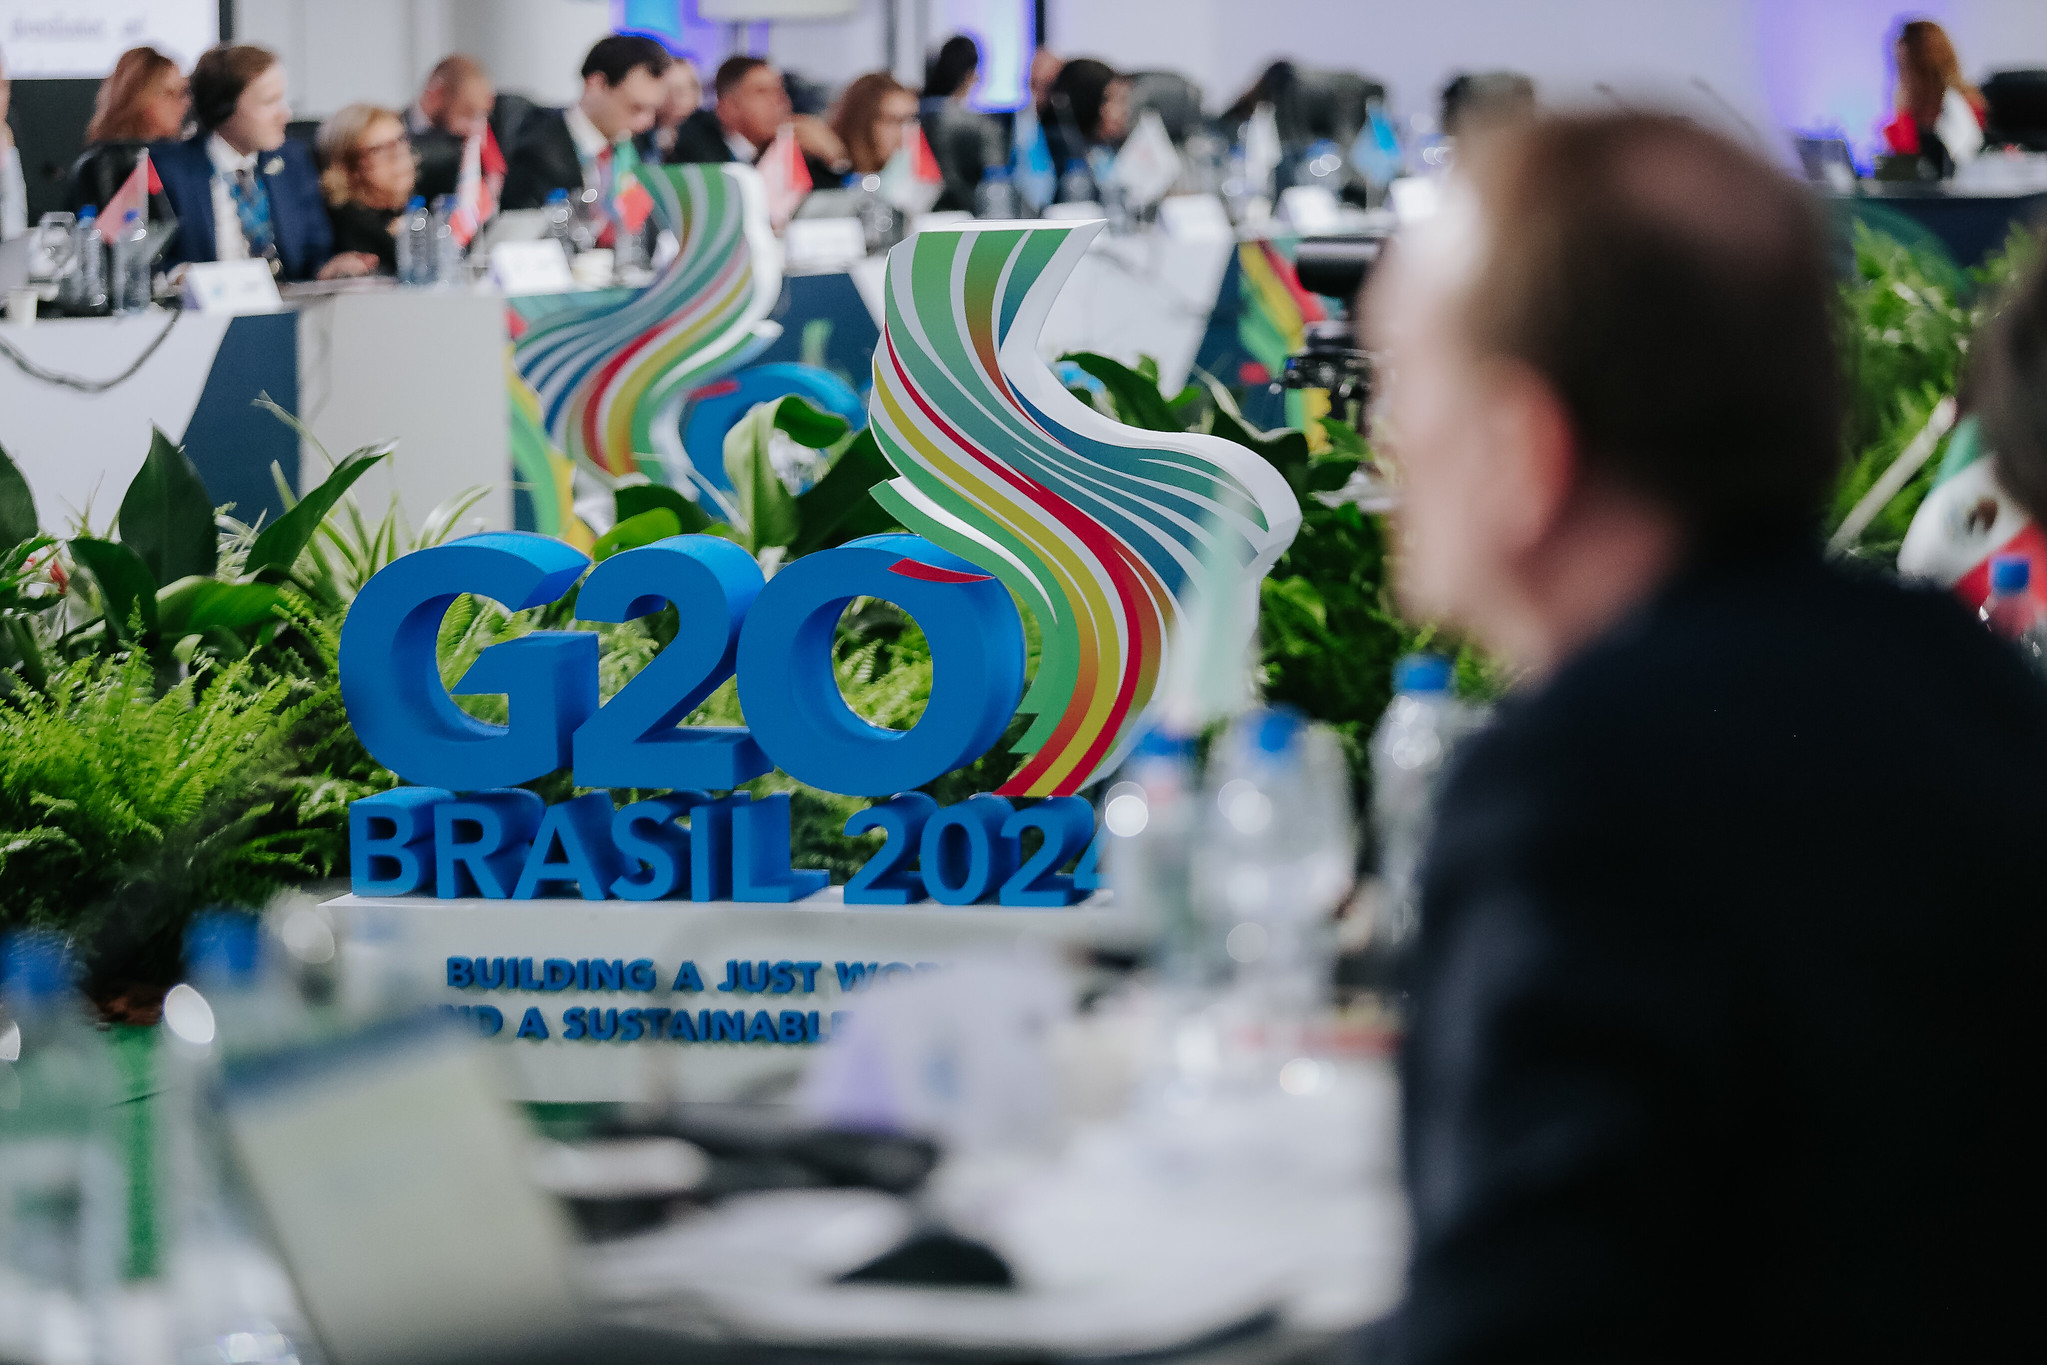 Reunião do G20 no Brasil